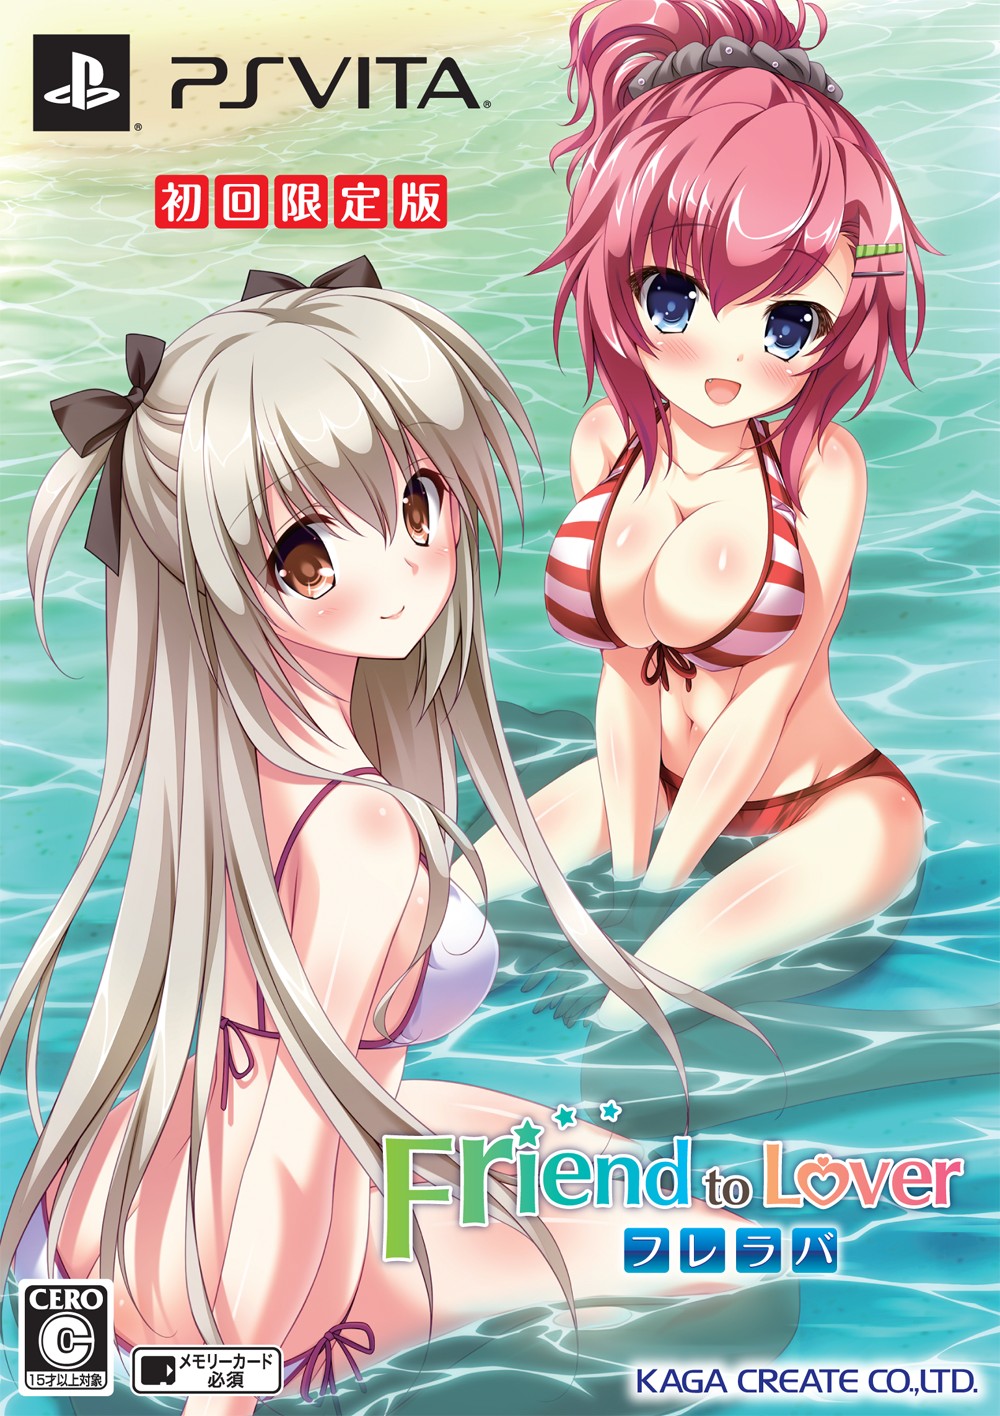 Friend To Lover フレラバ 初回限定版 ソフトウェアカタログ プレイステーション オフィシャルサイト